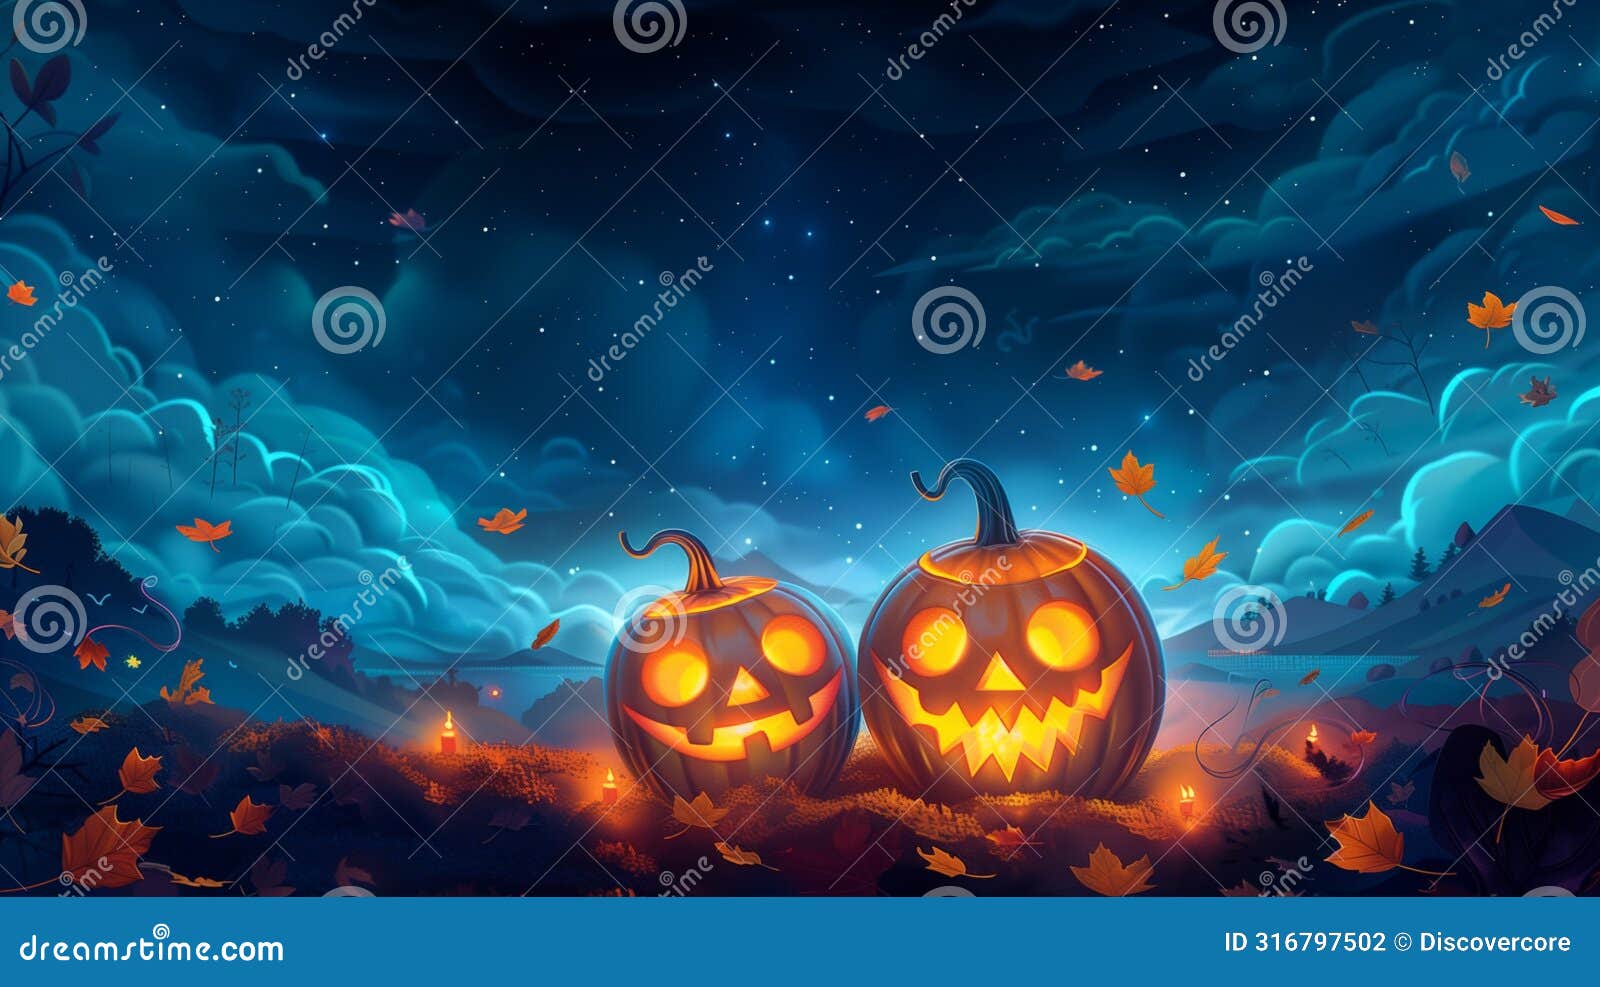 magical halloween night: playful pumpkin s